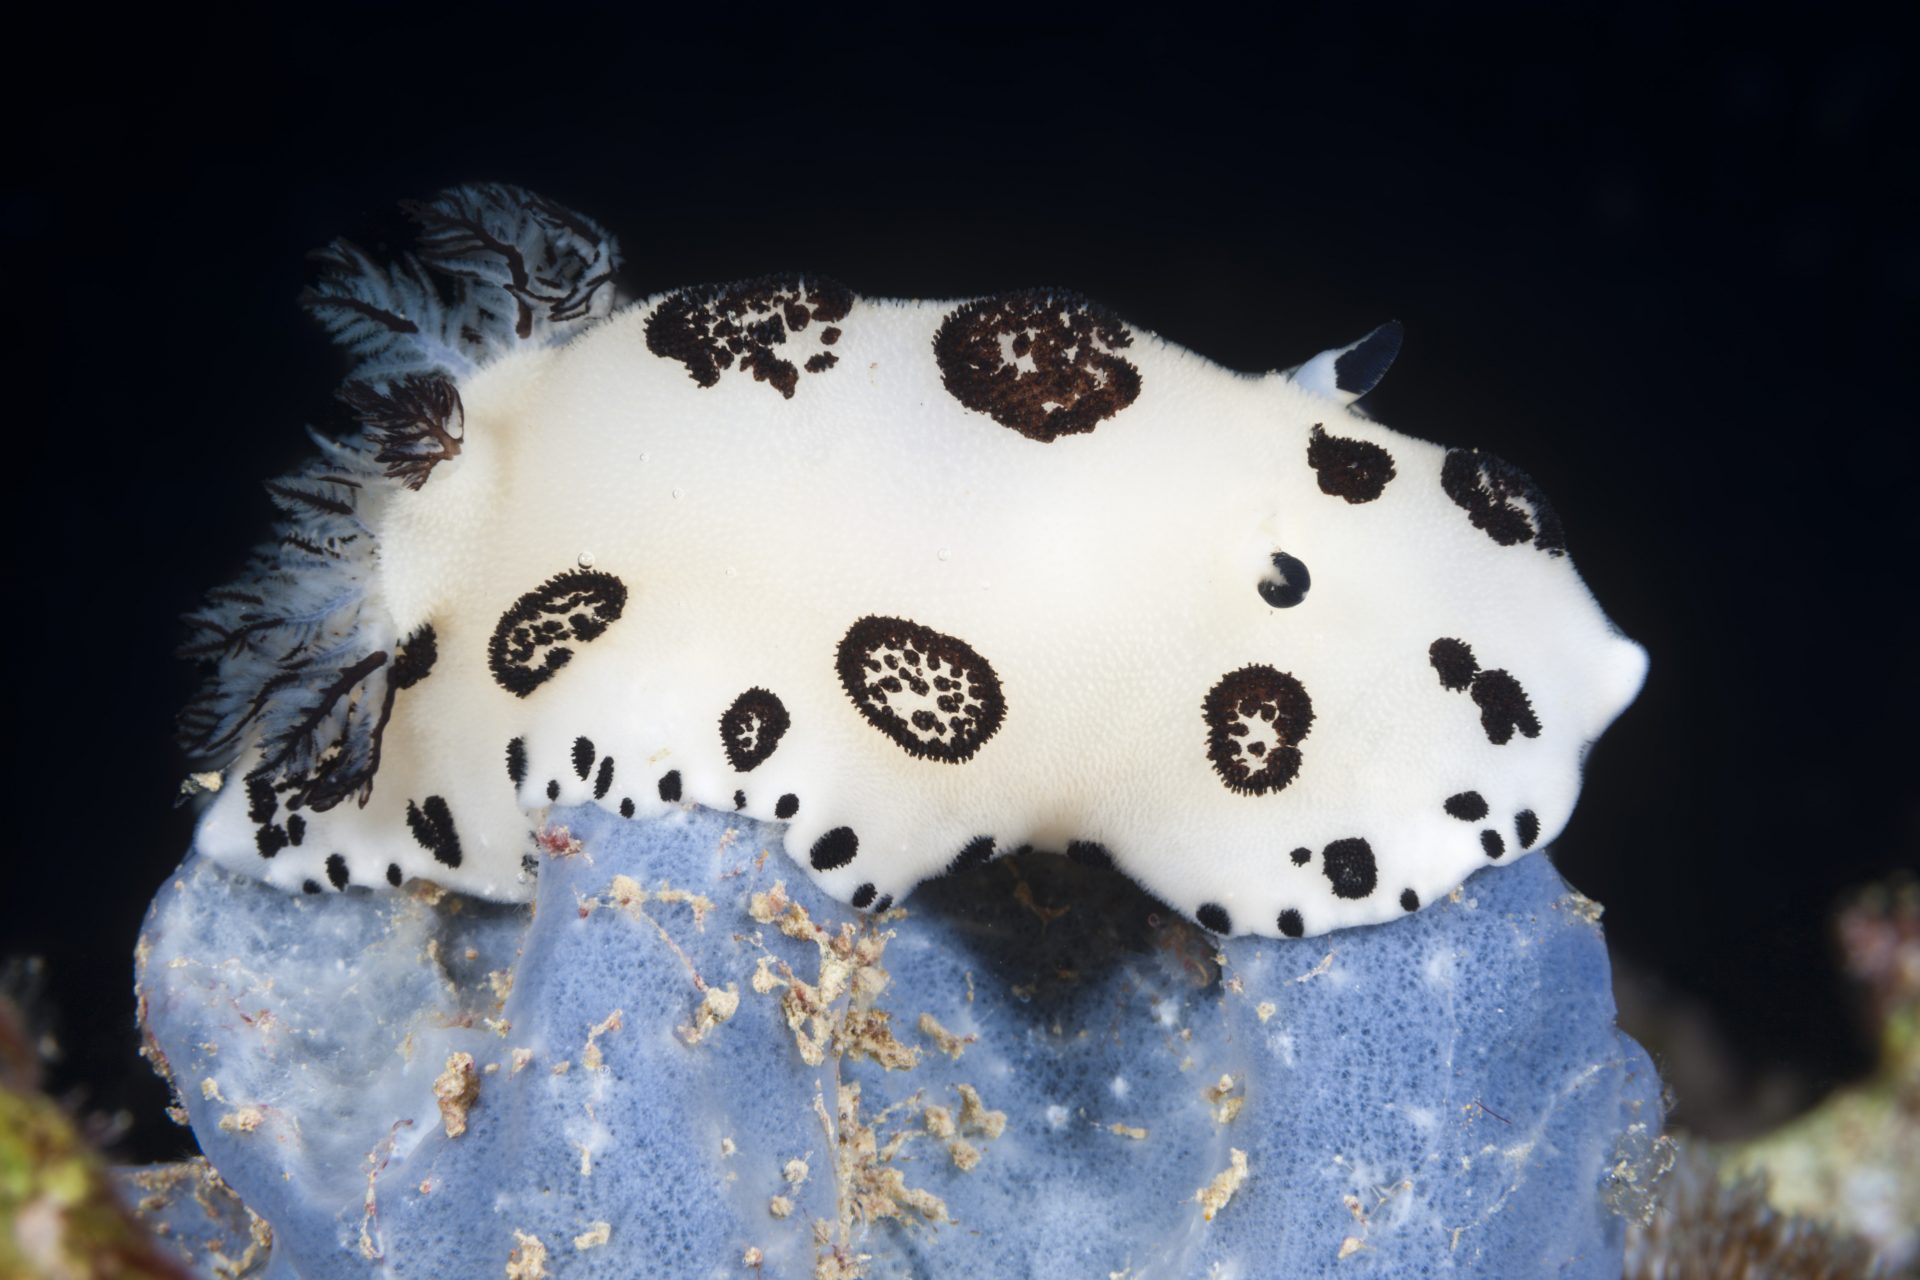 Spotted sea slug